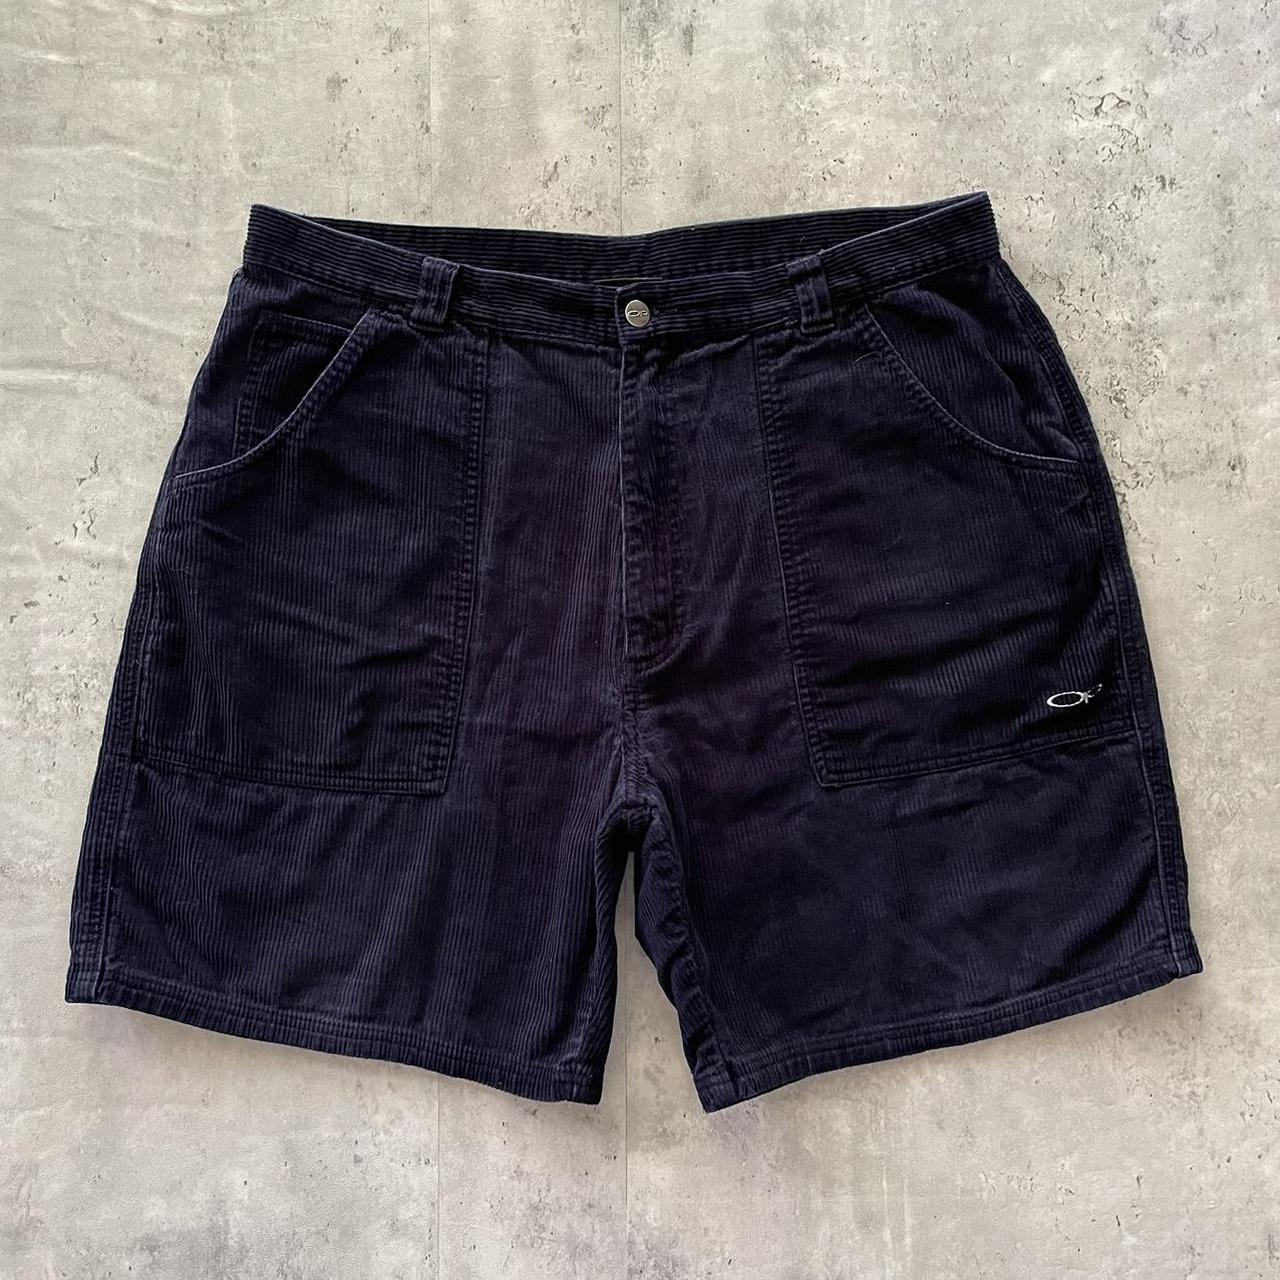 Ocean Pacific Men's Navy Shorts | Depop